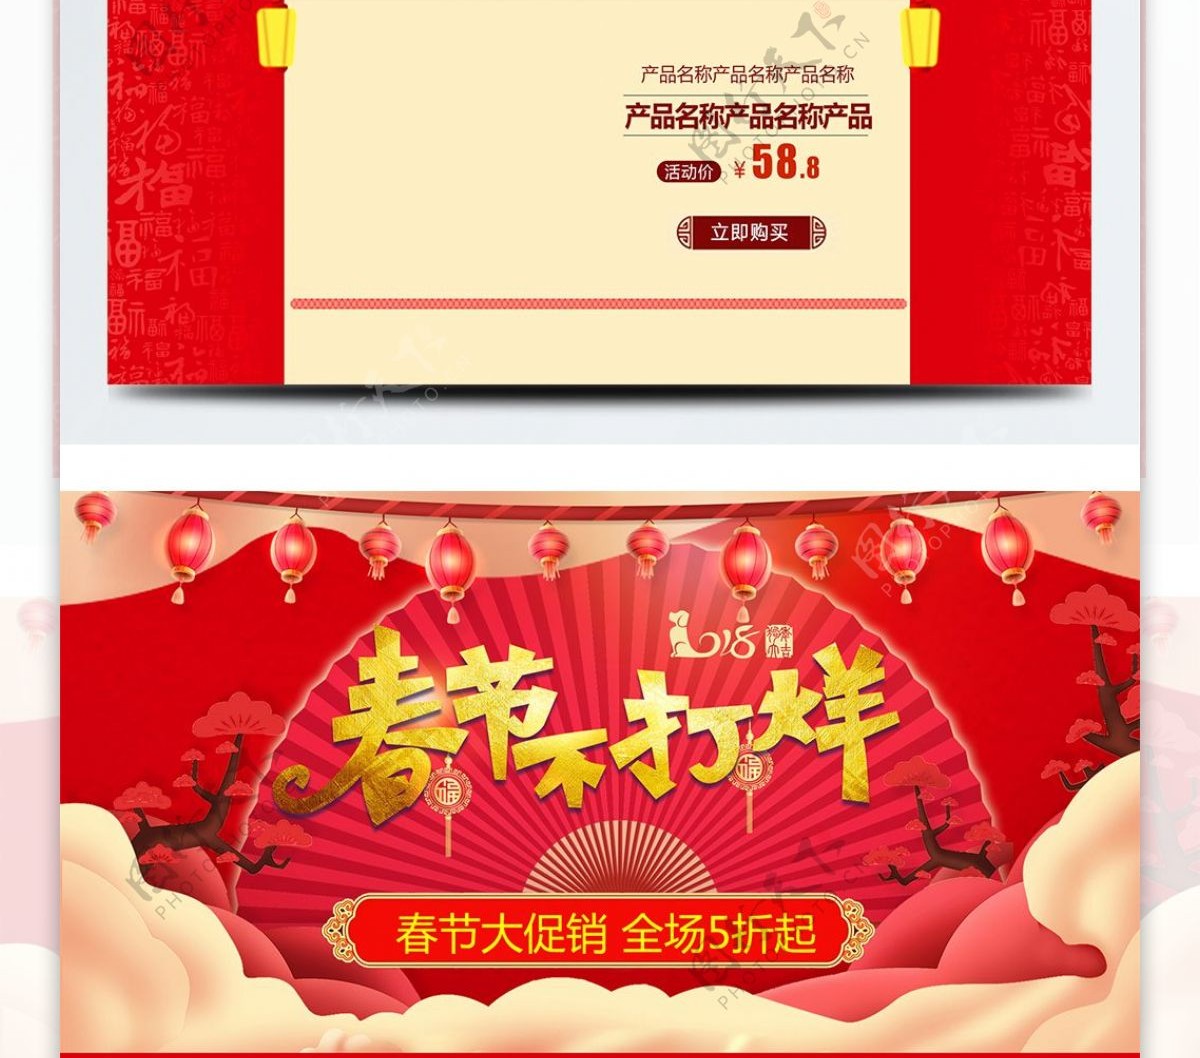 红色喜庆春节不打烊婴儿纸尿裤首页促销模板